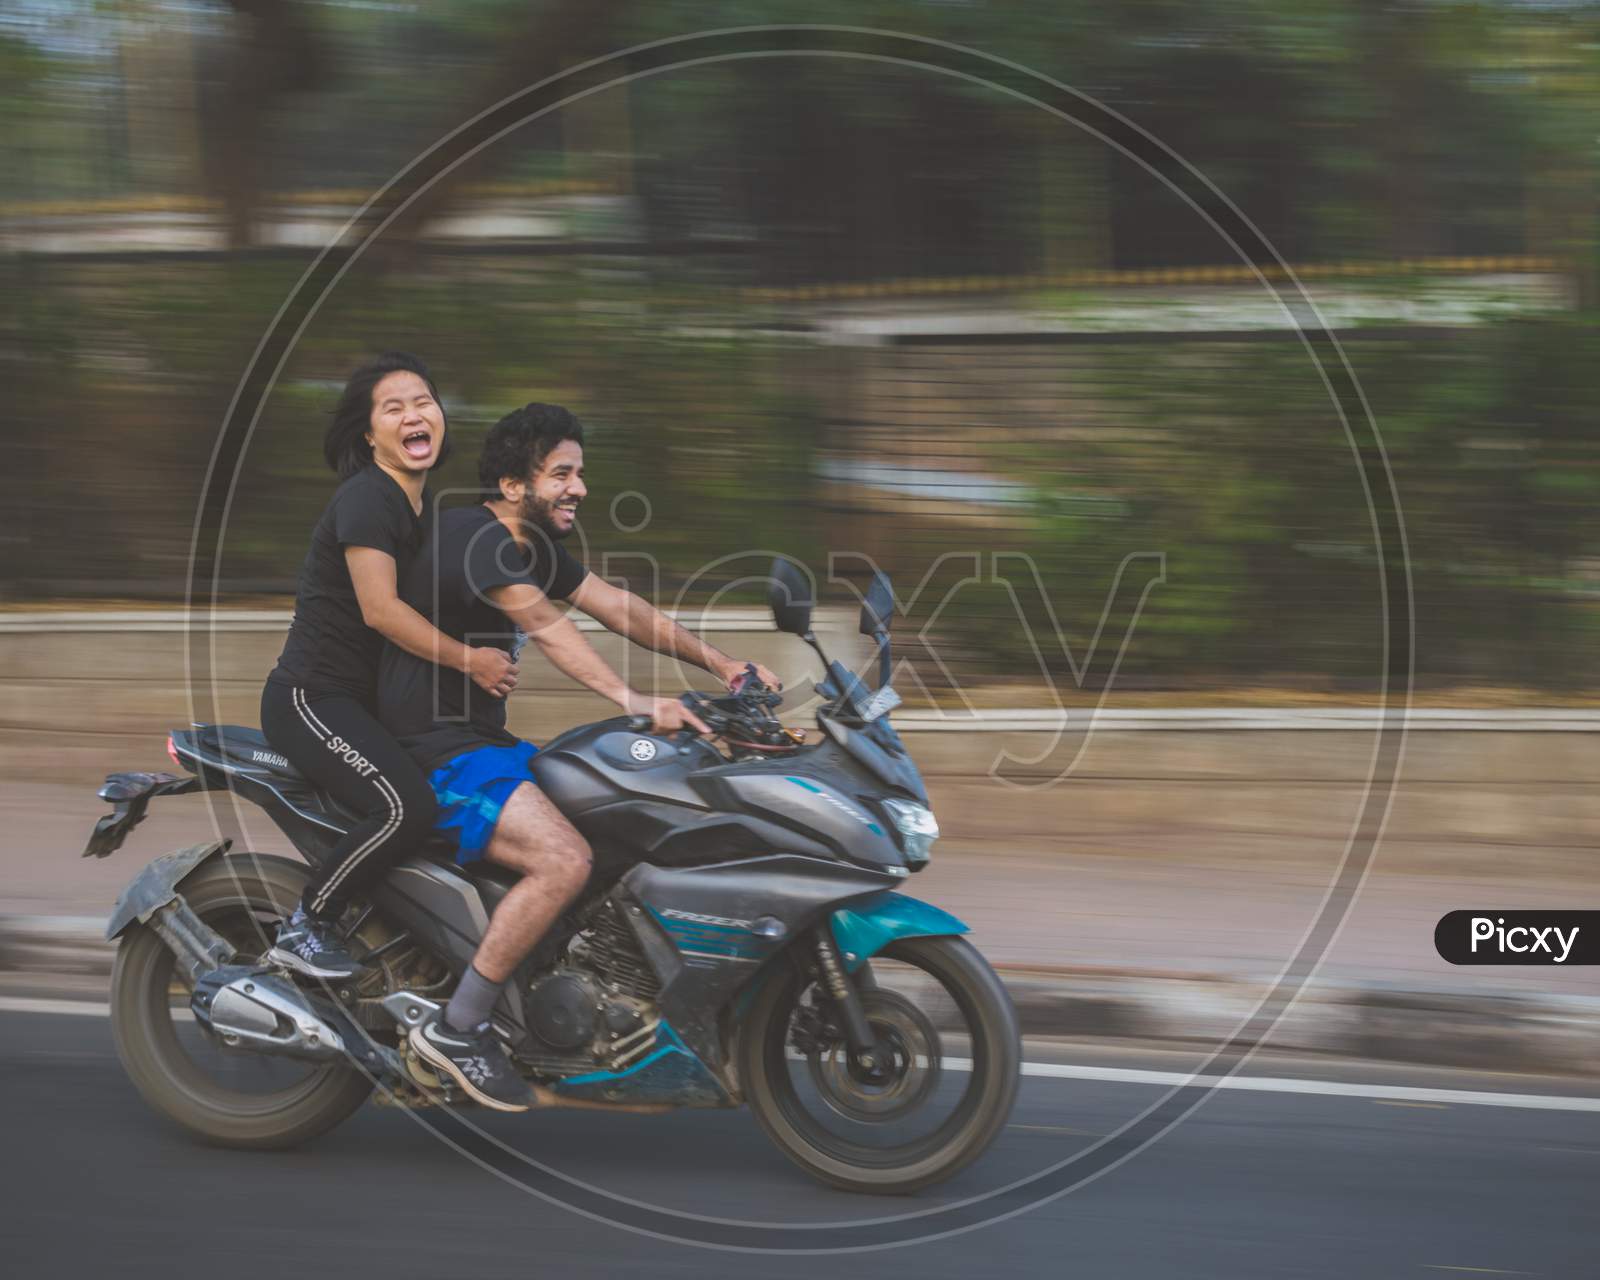 A Happy Couple On a Bike